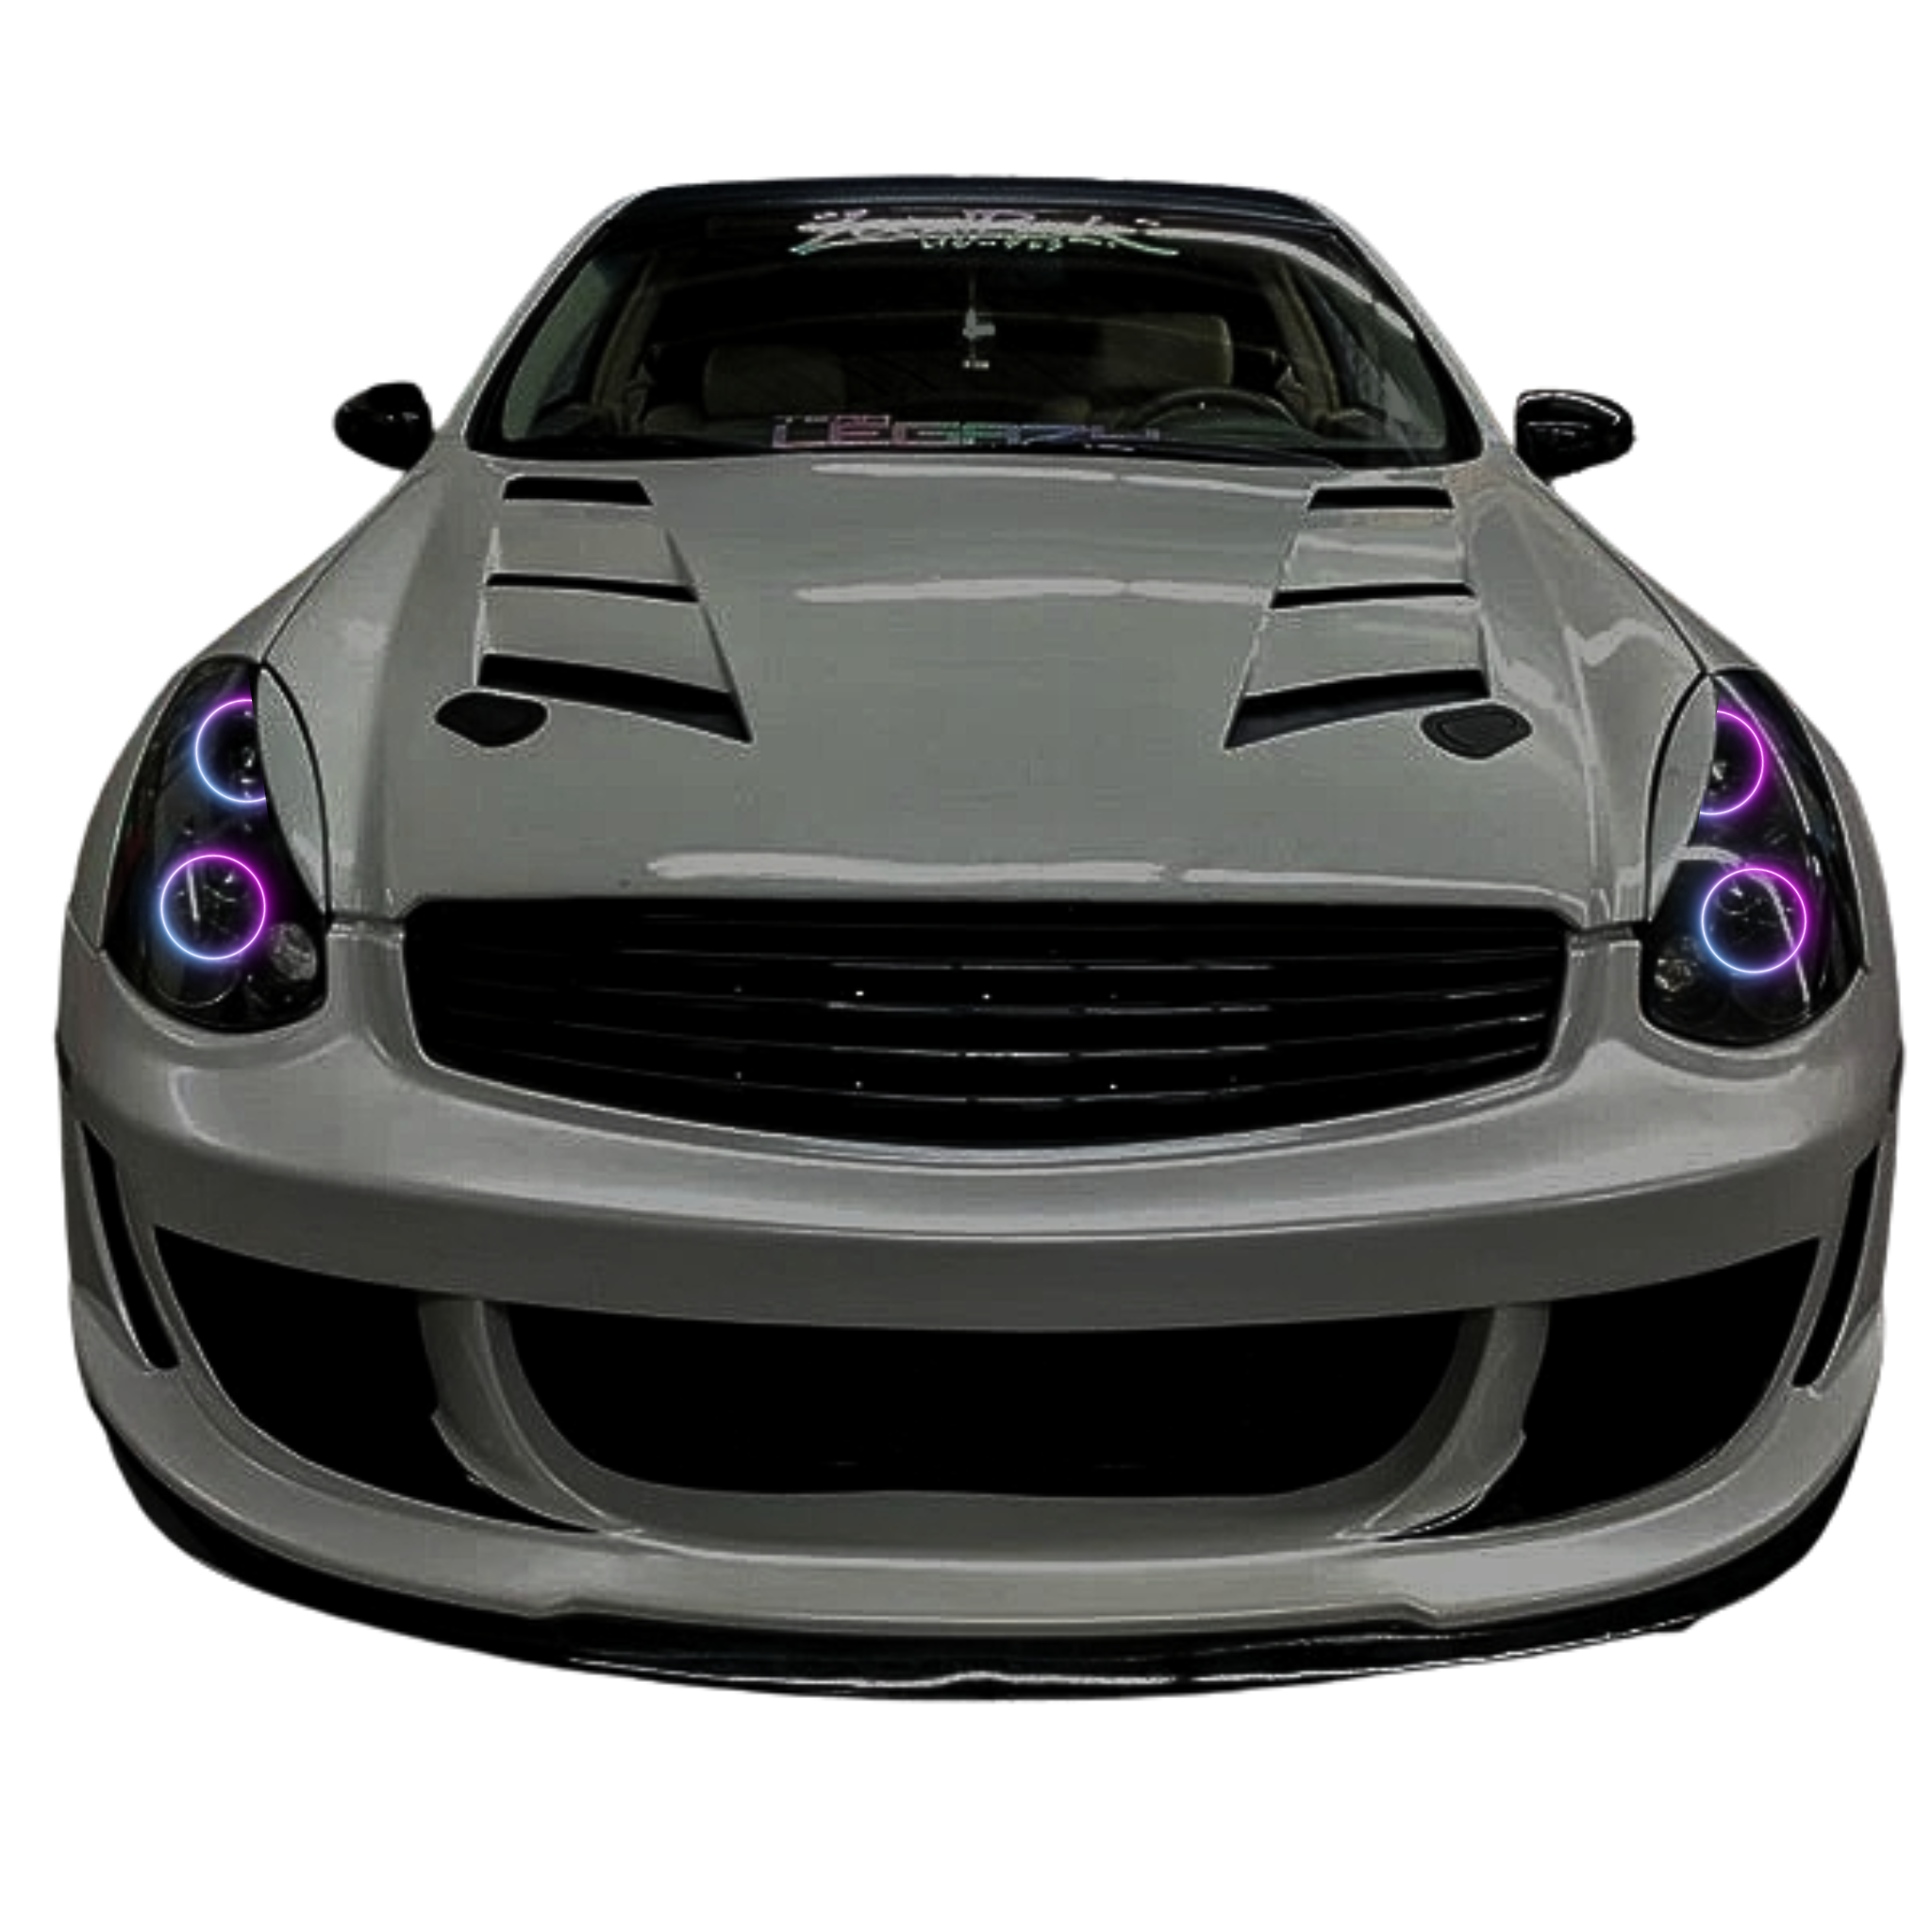 ORACLE Lighting 2003-2005 Infiniti G35 Coupe LED Headlight Halo Kit